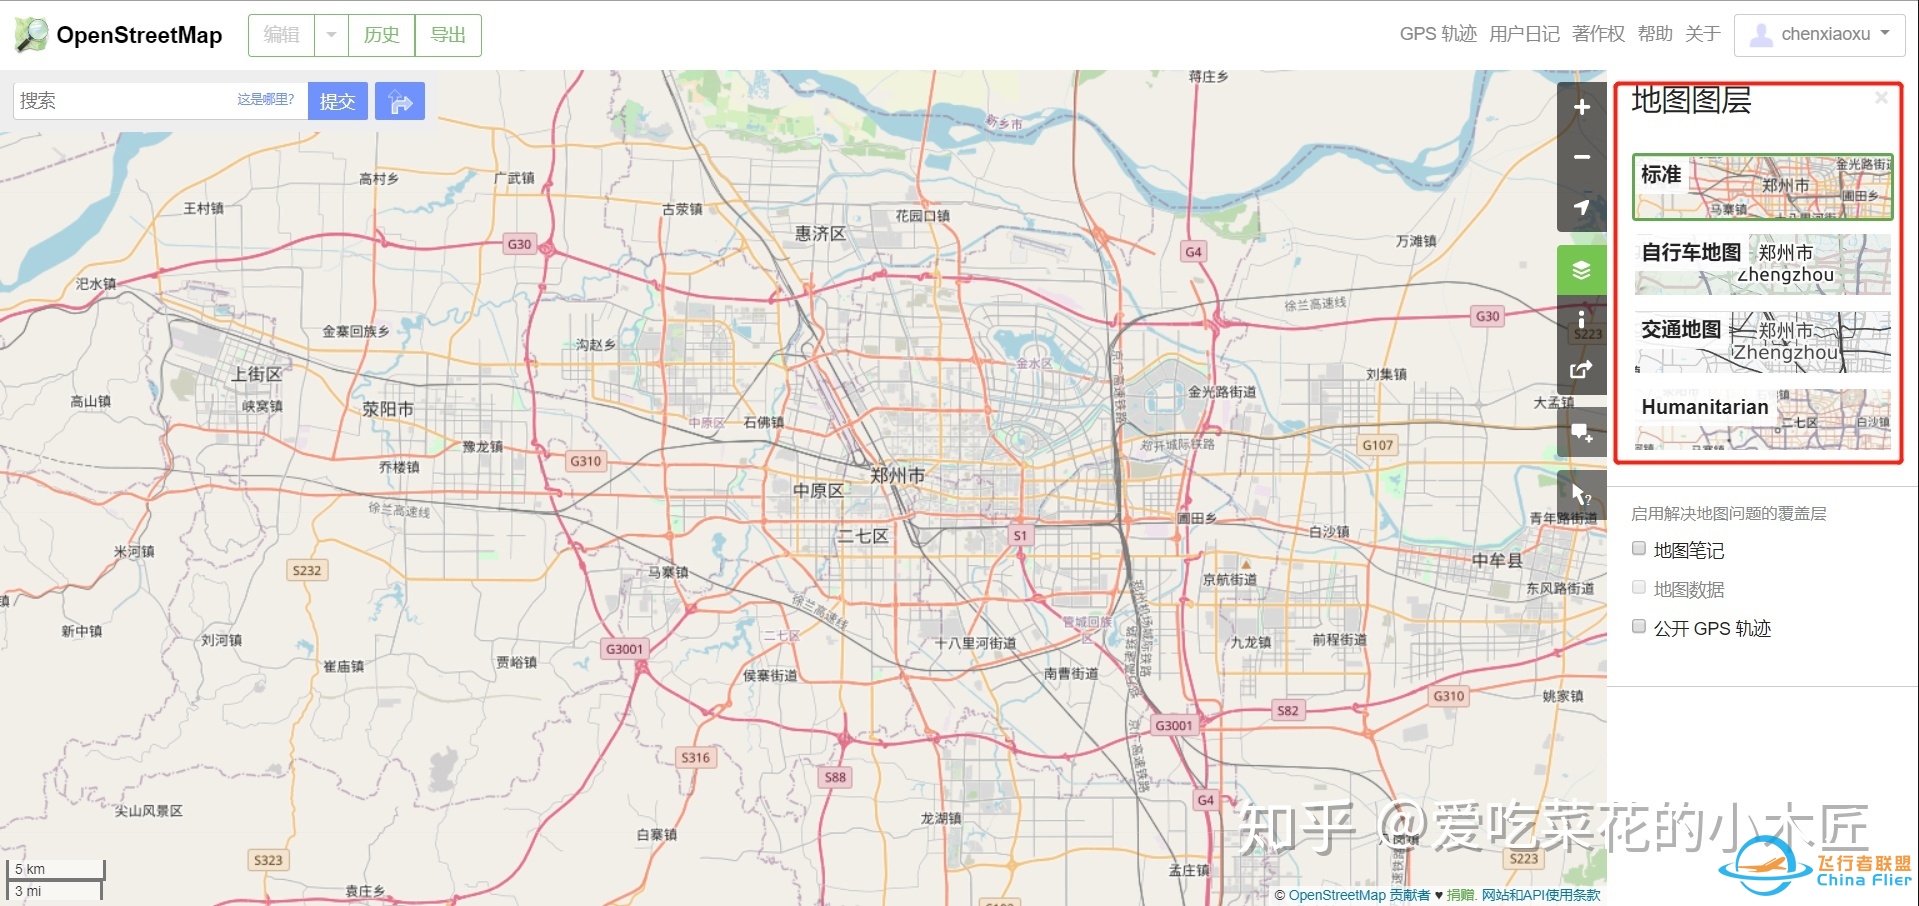 从Openstreetmap获取路网数据并制作shapefile图层-7284 